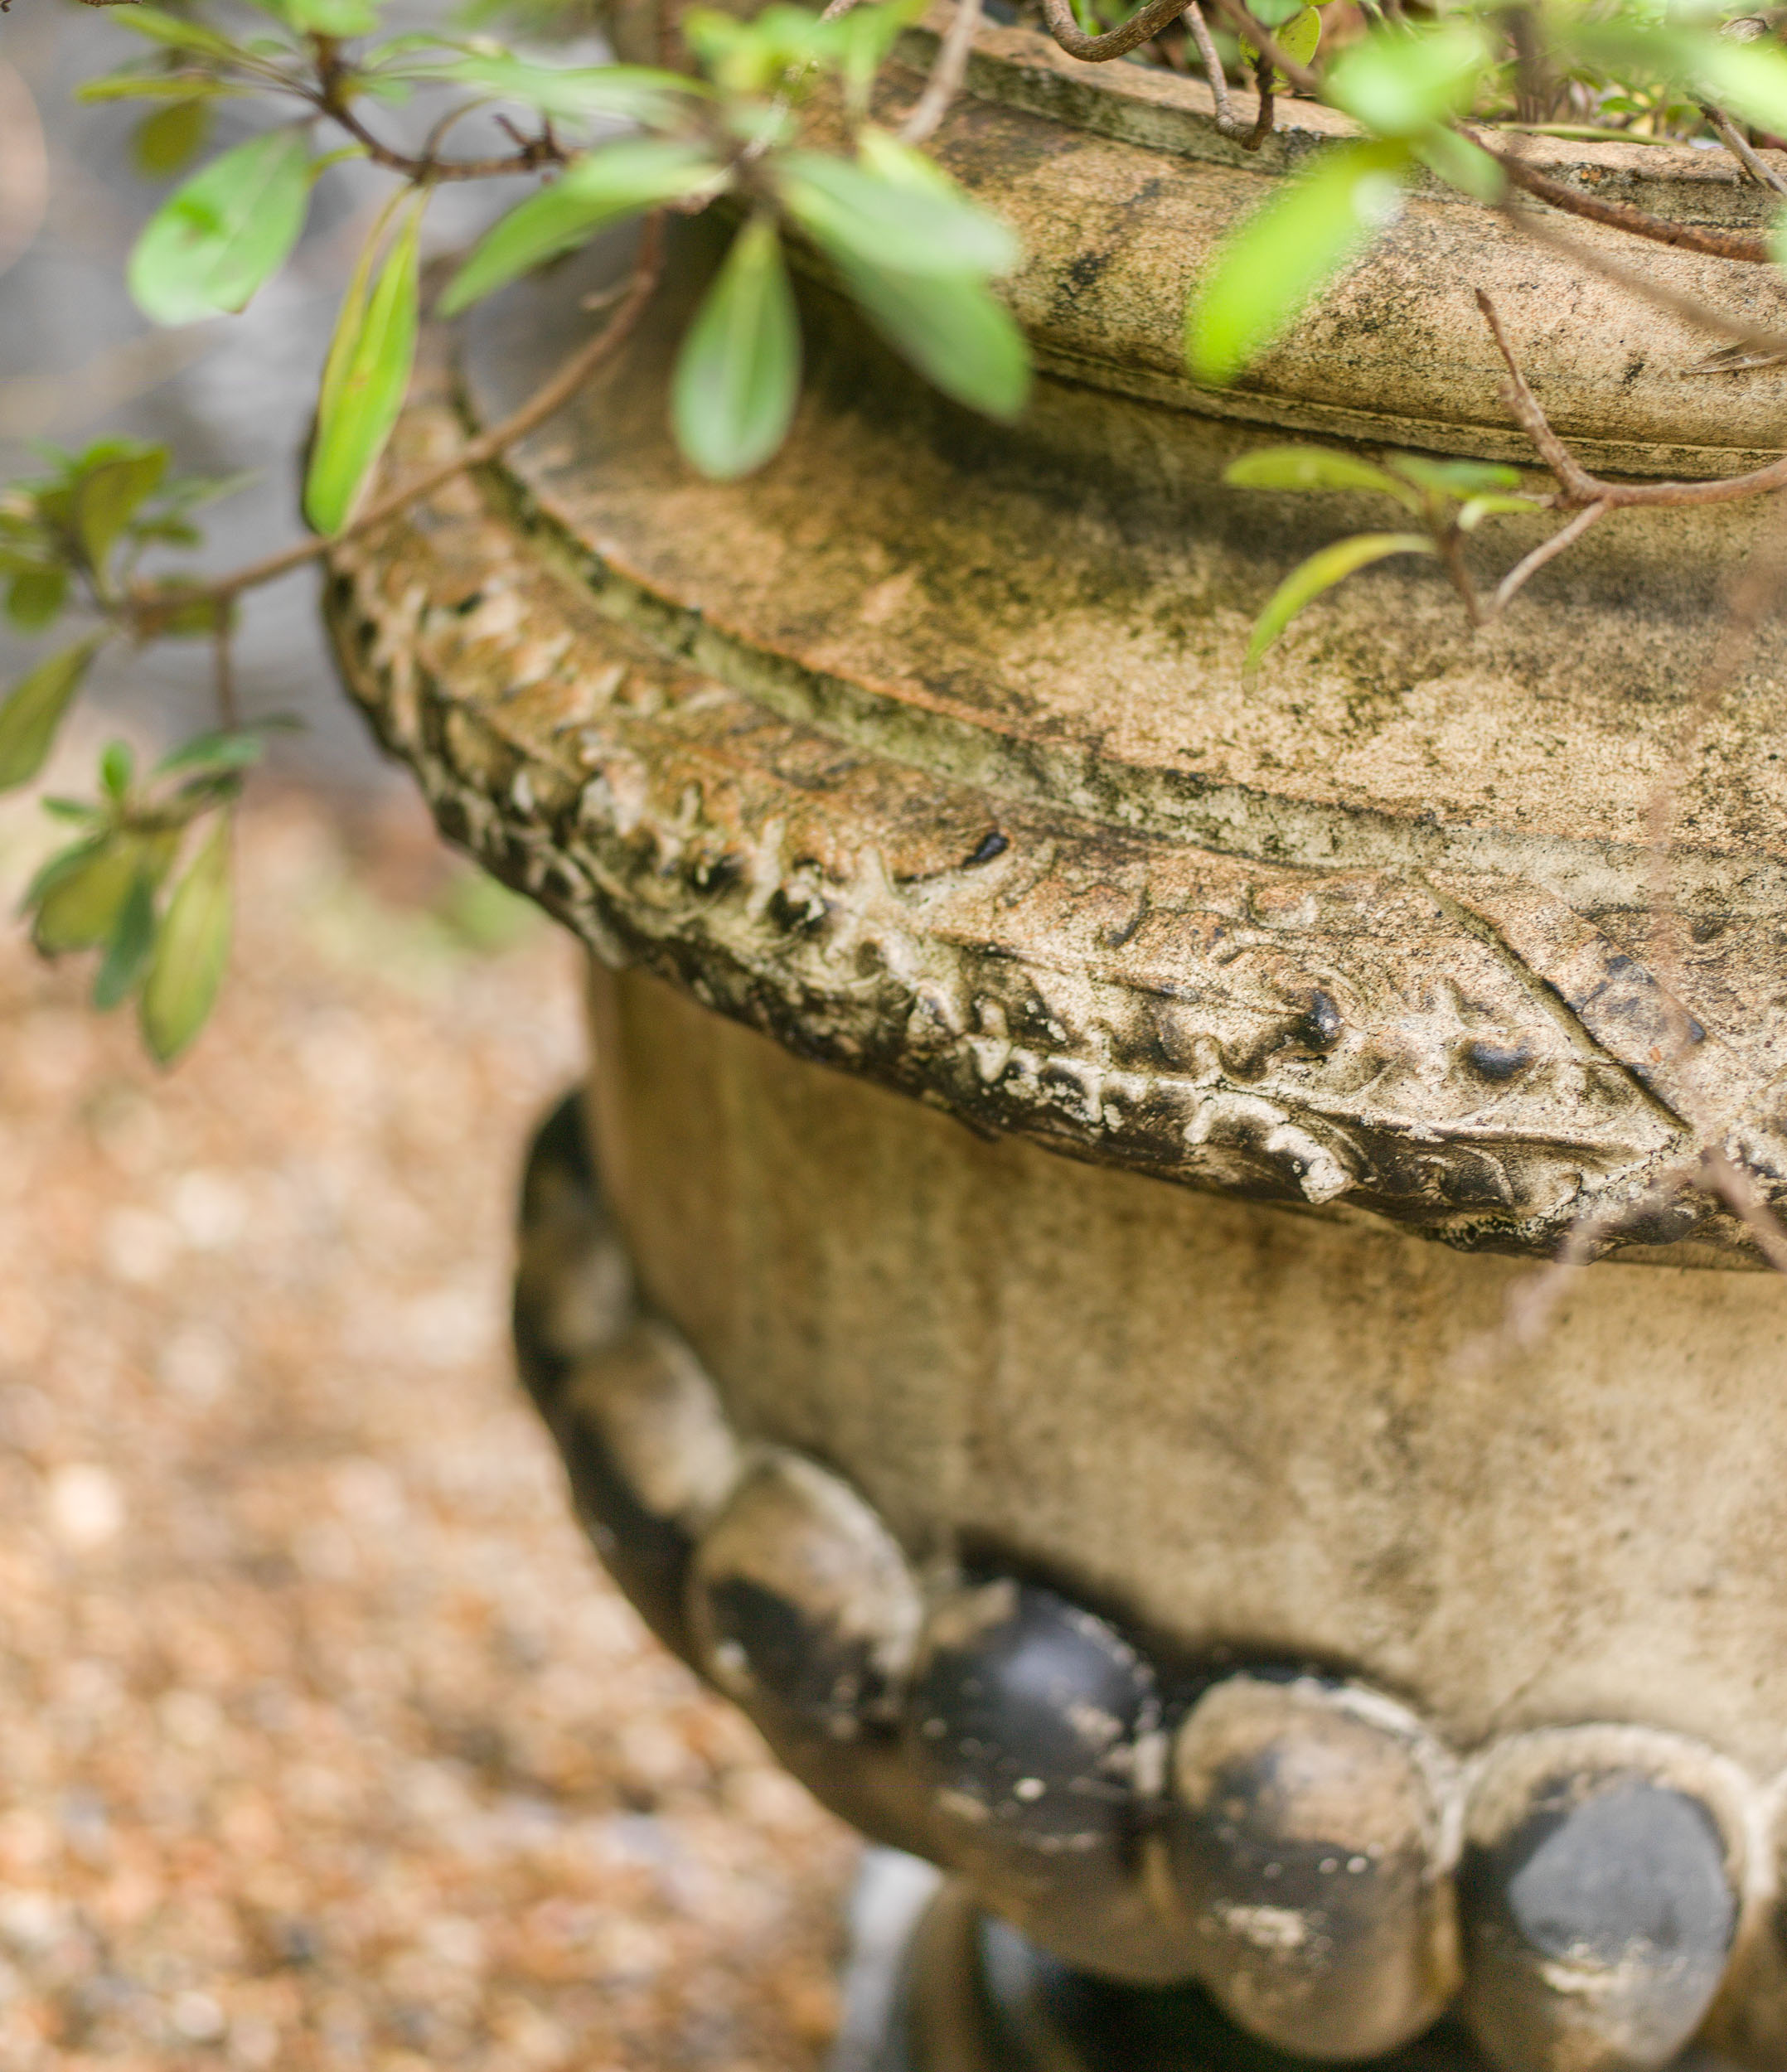 A Garnick Fireclay Terracotta Garden Urn 